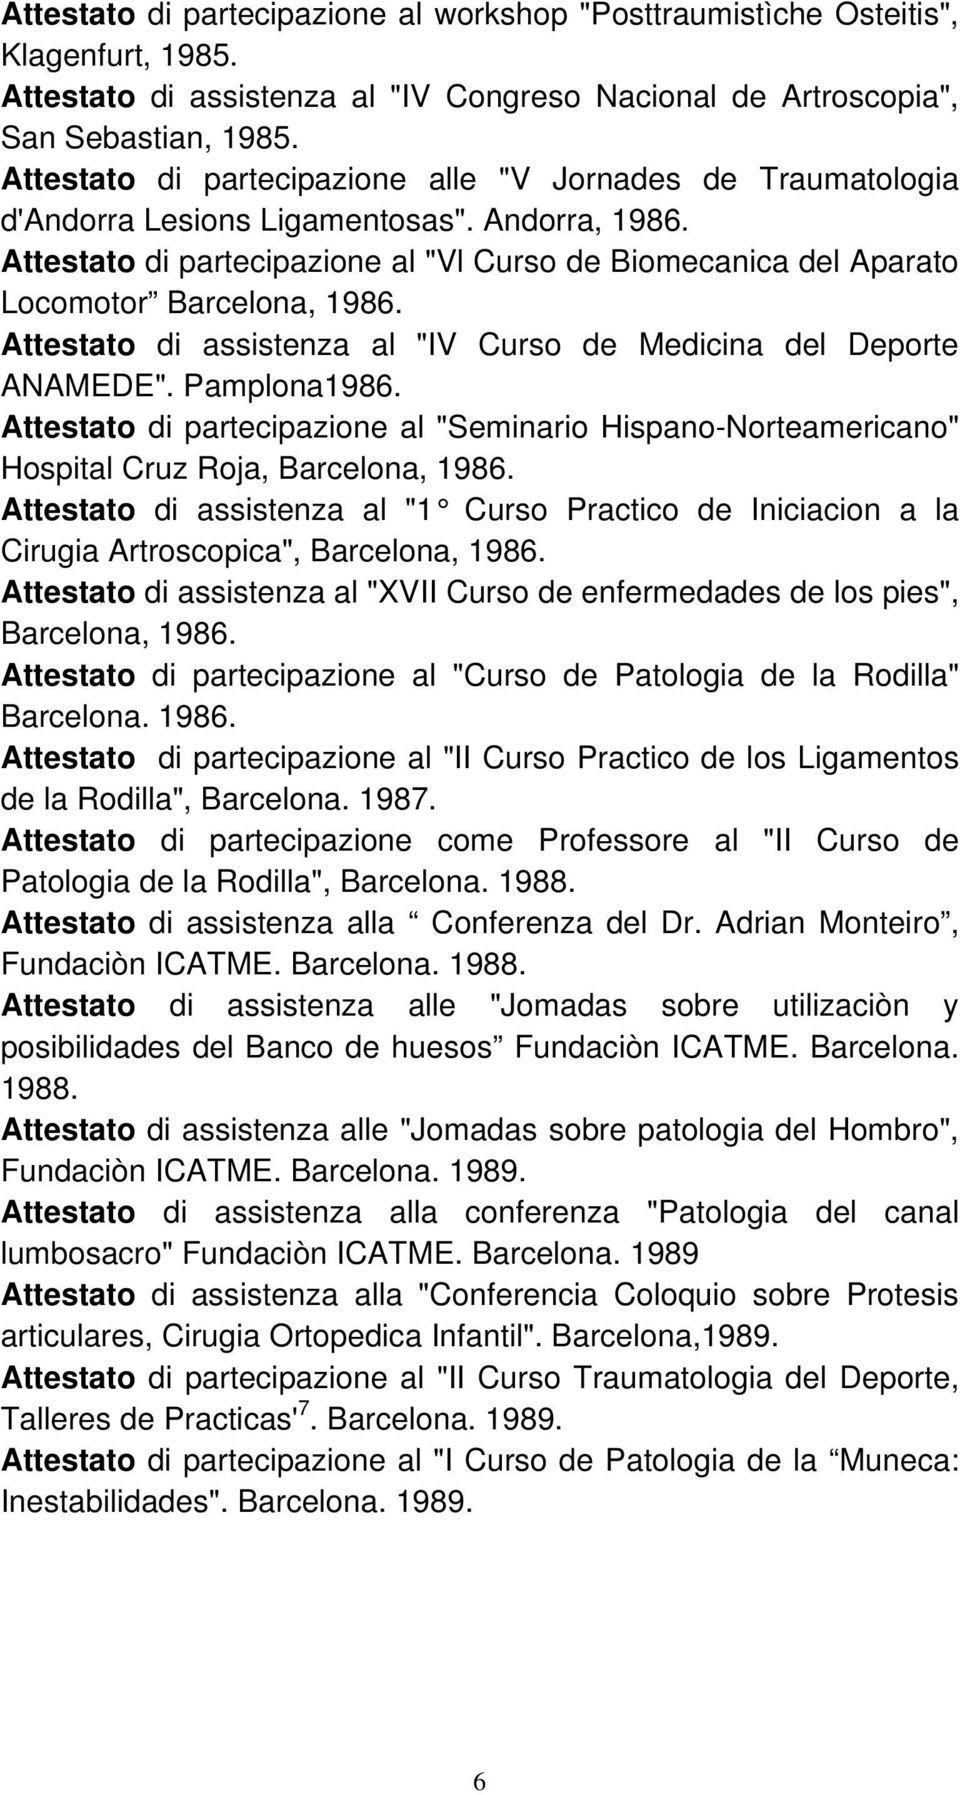 Attestato di partecipazione al "Vl Curso de Biomecanica del Aparato Locomotor Barcelona, 1986. Attestato di assistenza al "IV Curso de Medicina del Deporte ANAMEDE". Pamplona1986.